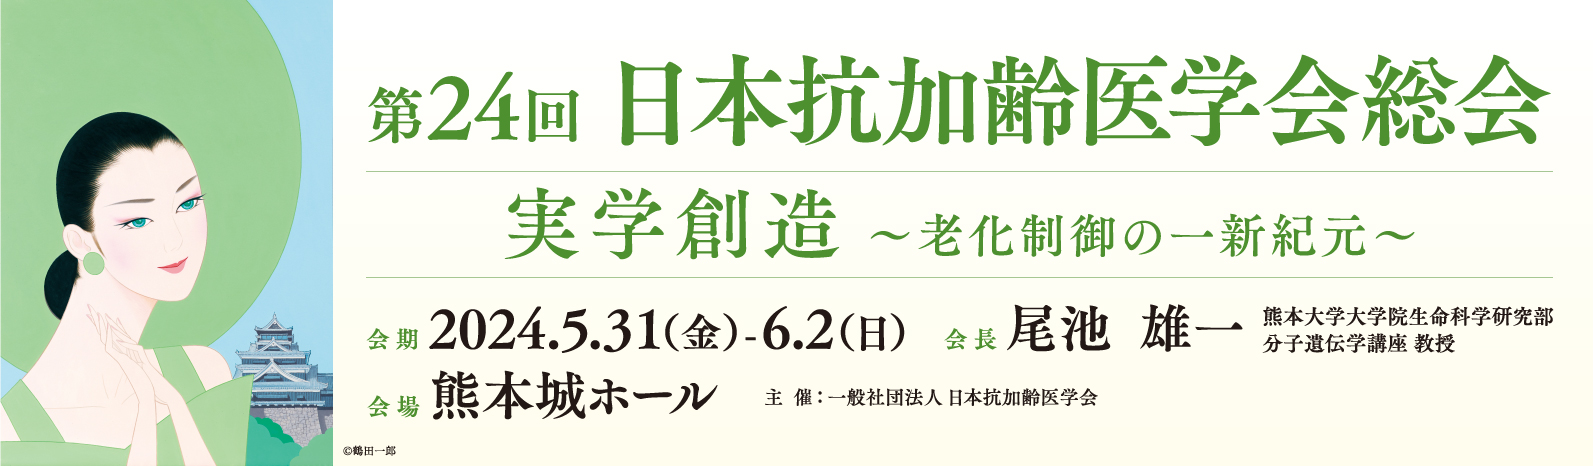 第24回 日本抗加齢医学会総会